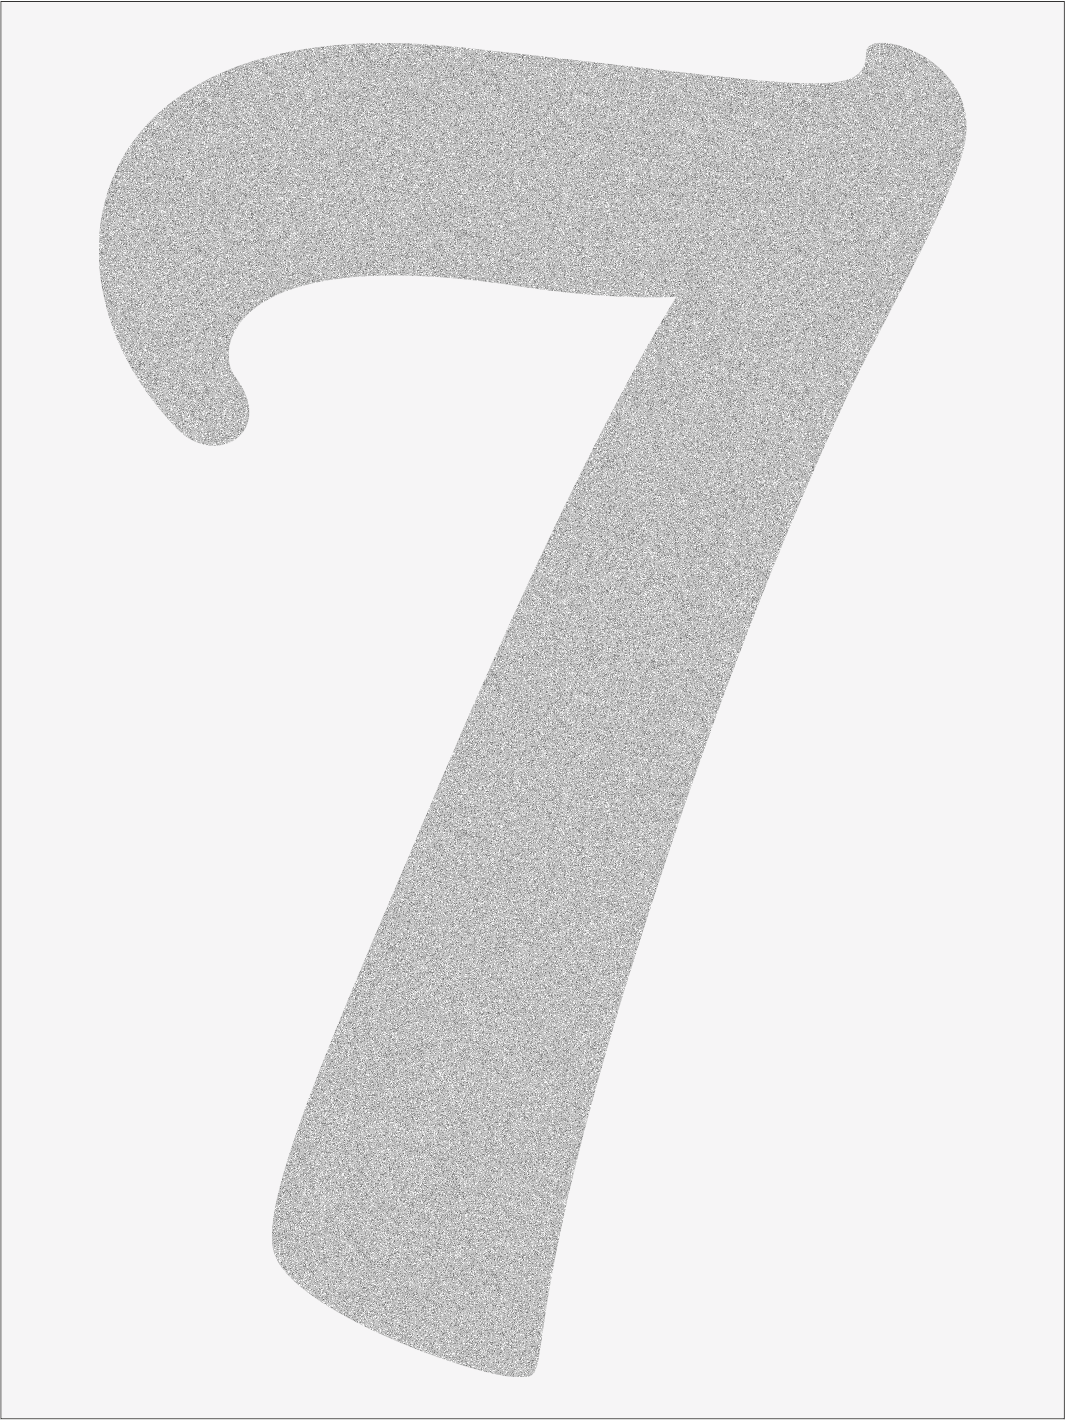 Číslice 7 font1